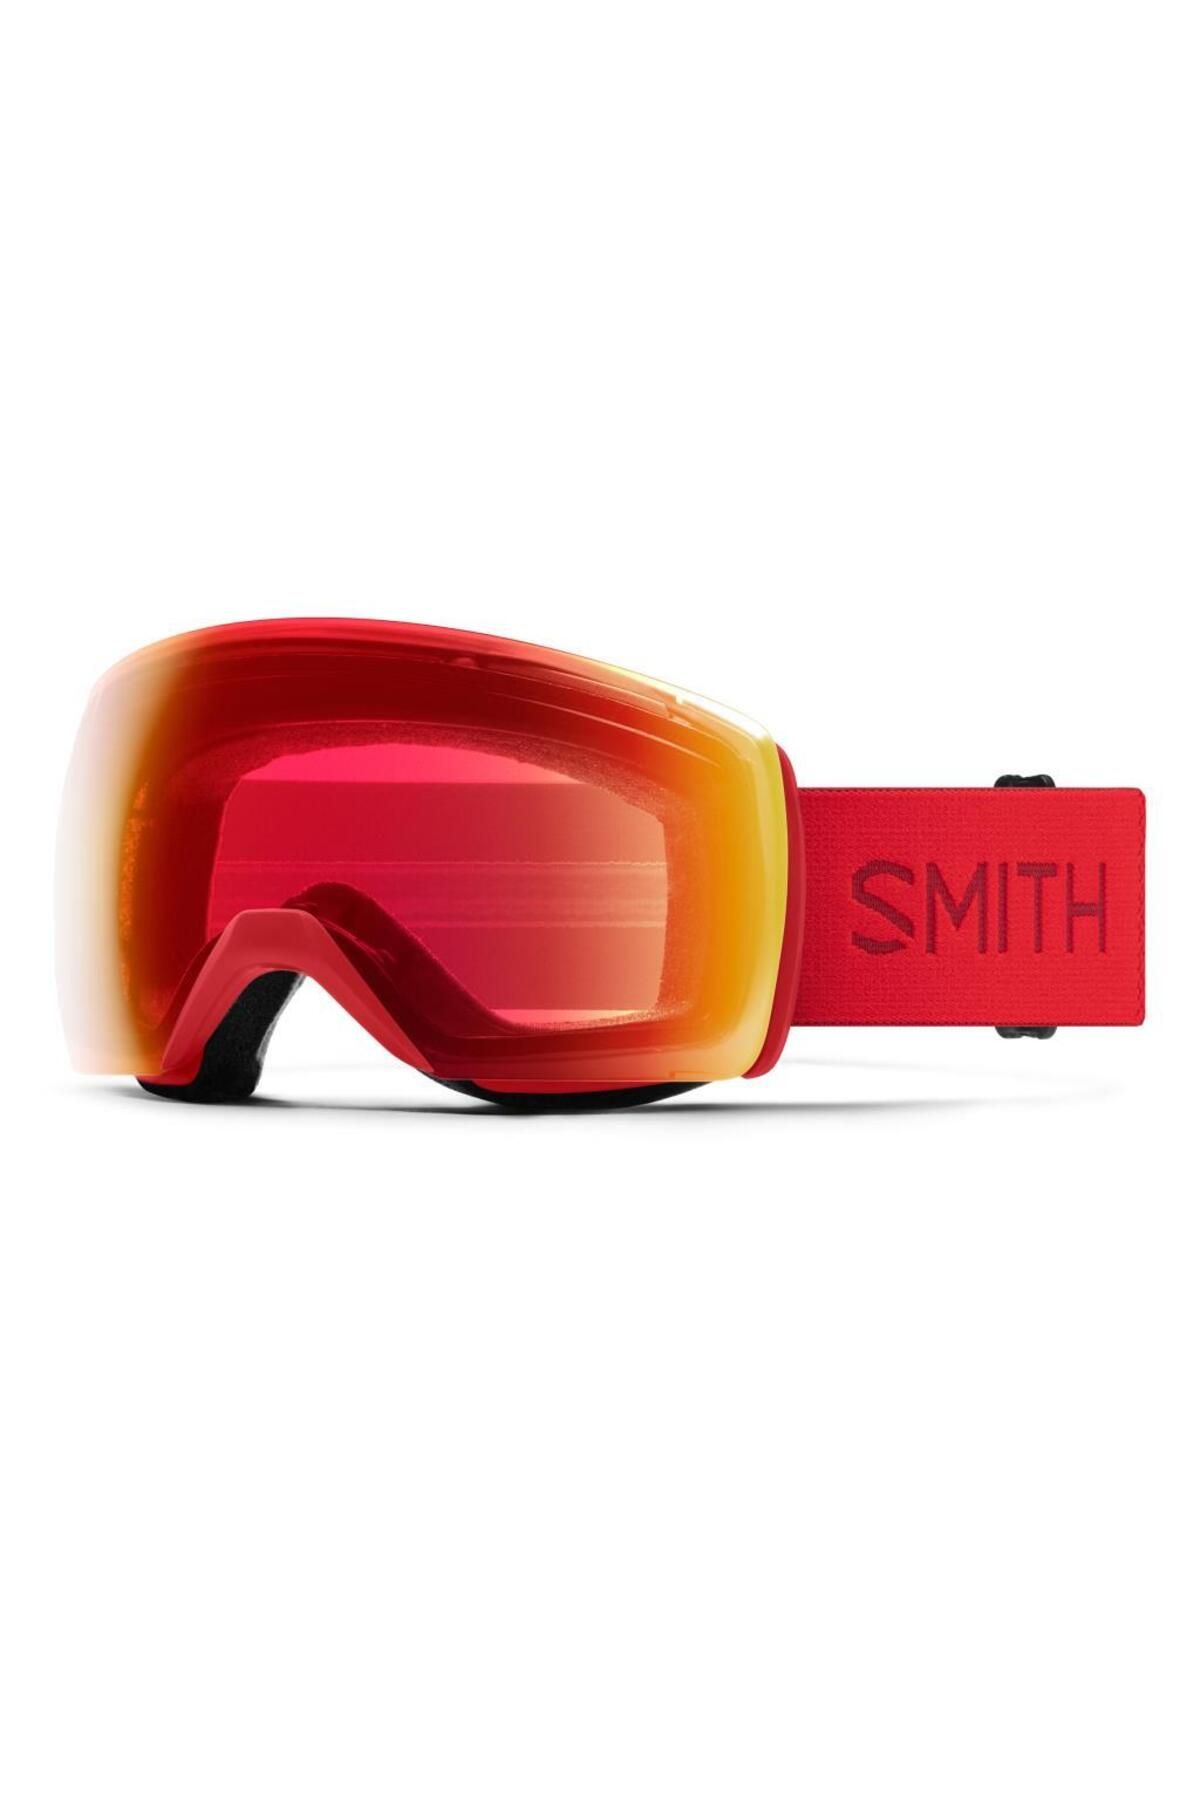 Smith Skyline Xl 2rnoq Kolormatik Kayak Gözlüğü